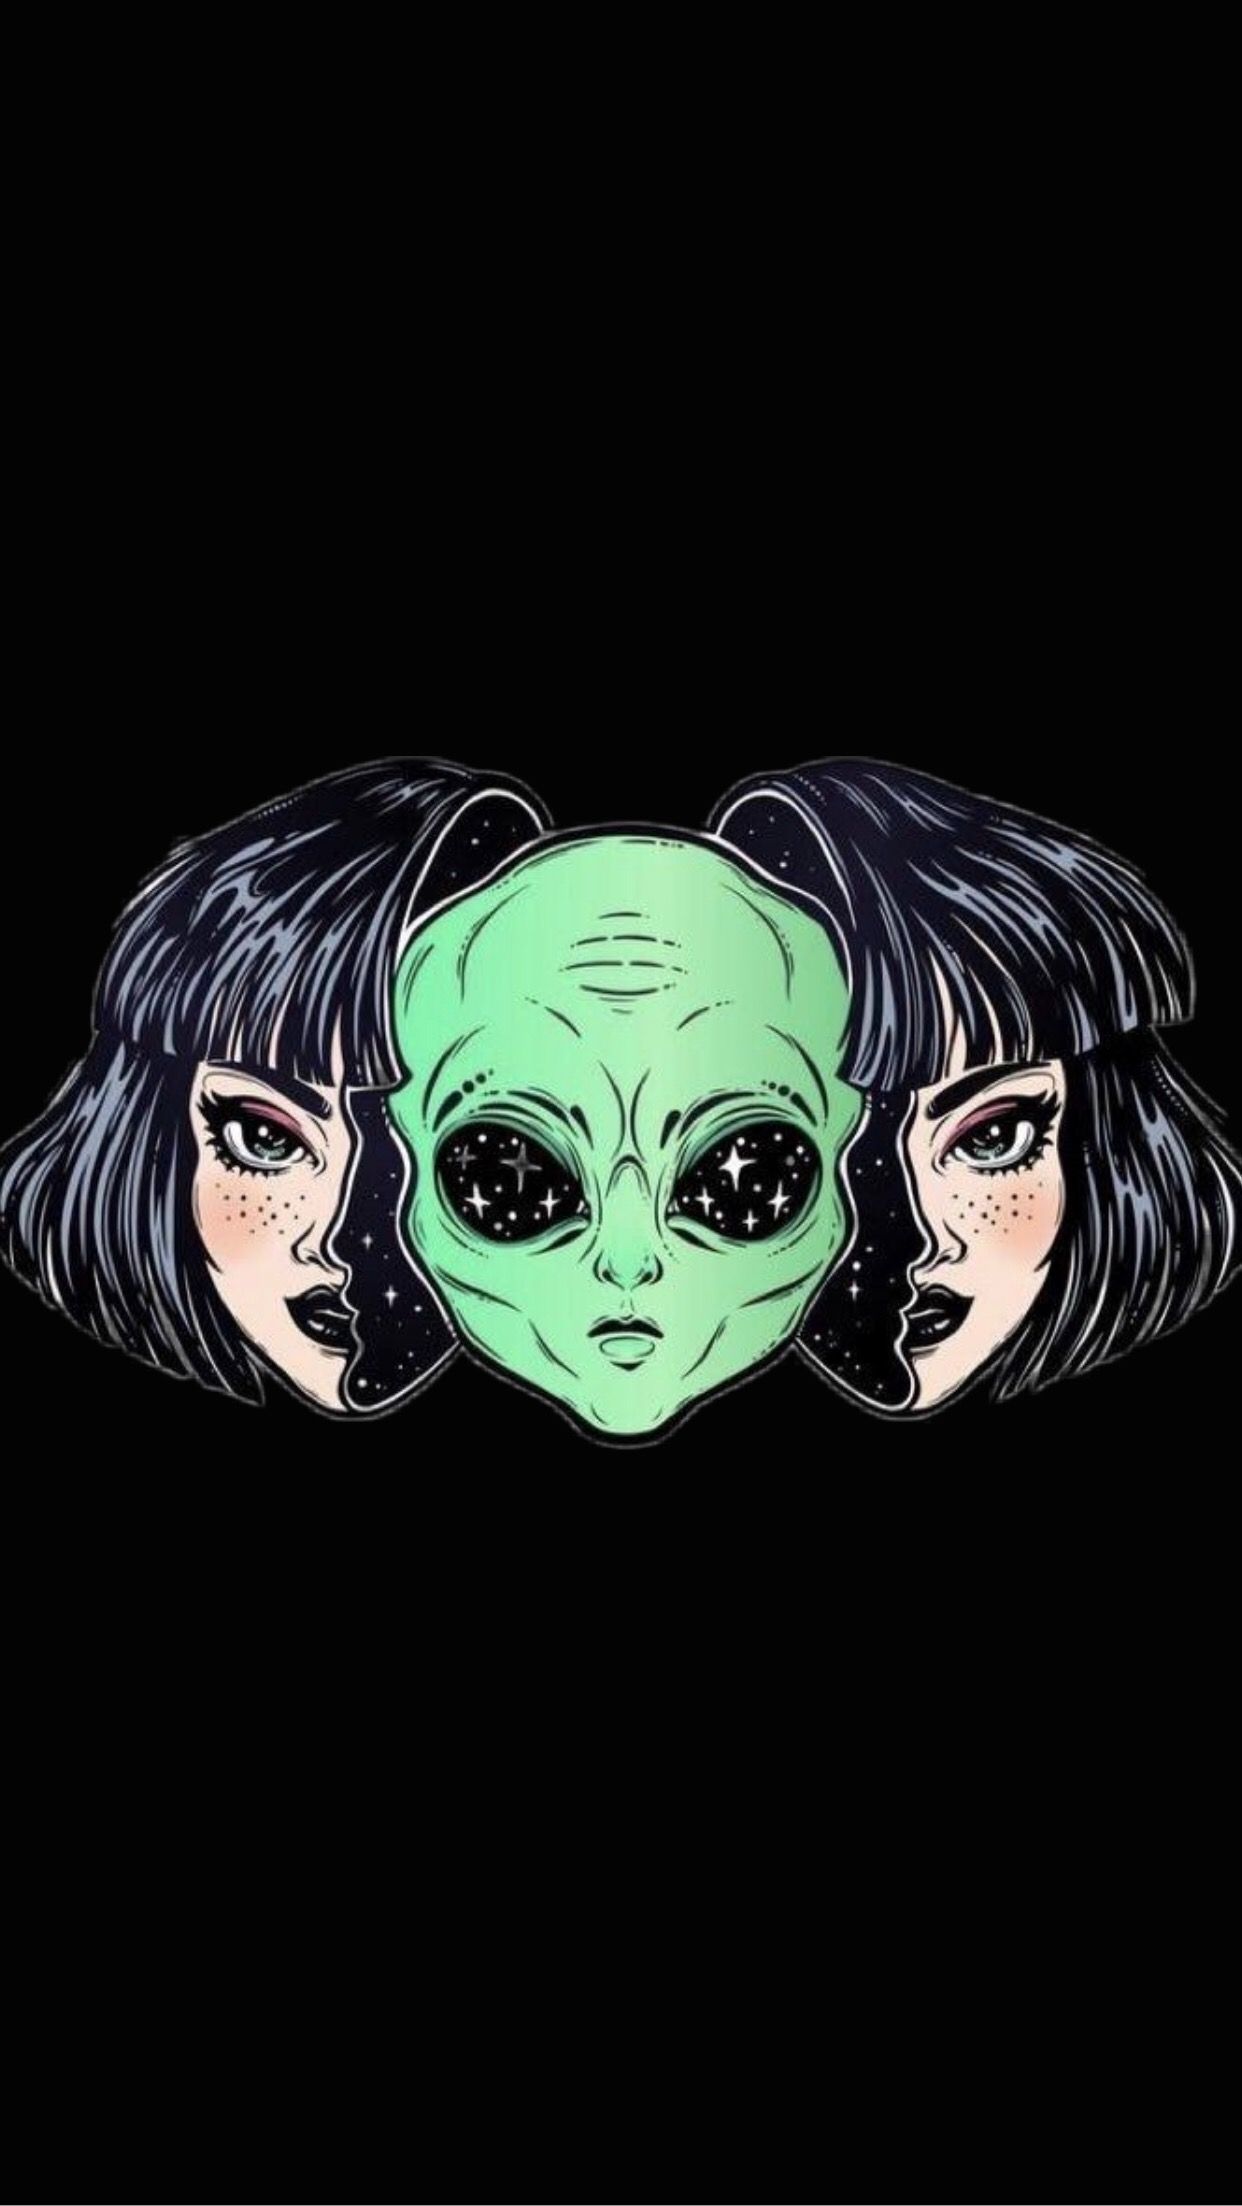 Alien Anime Wallpaper Free Alien Anime Background